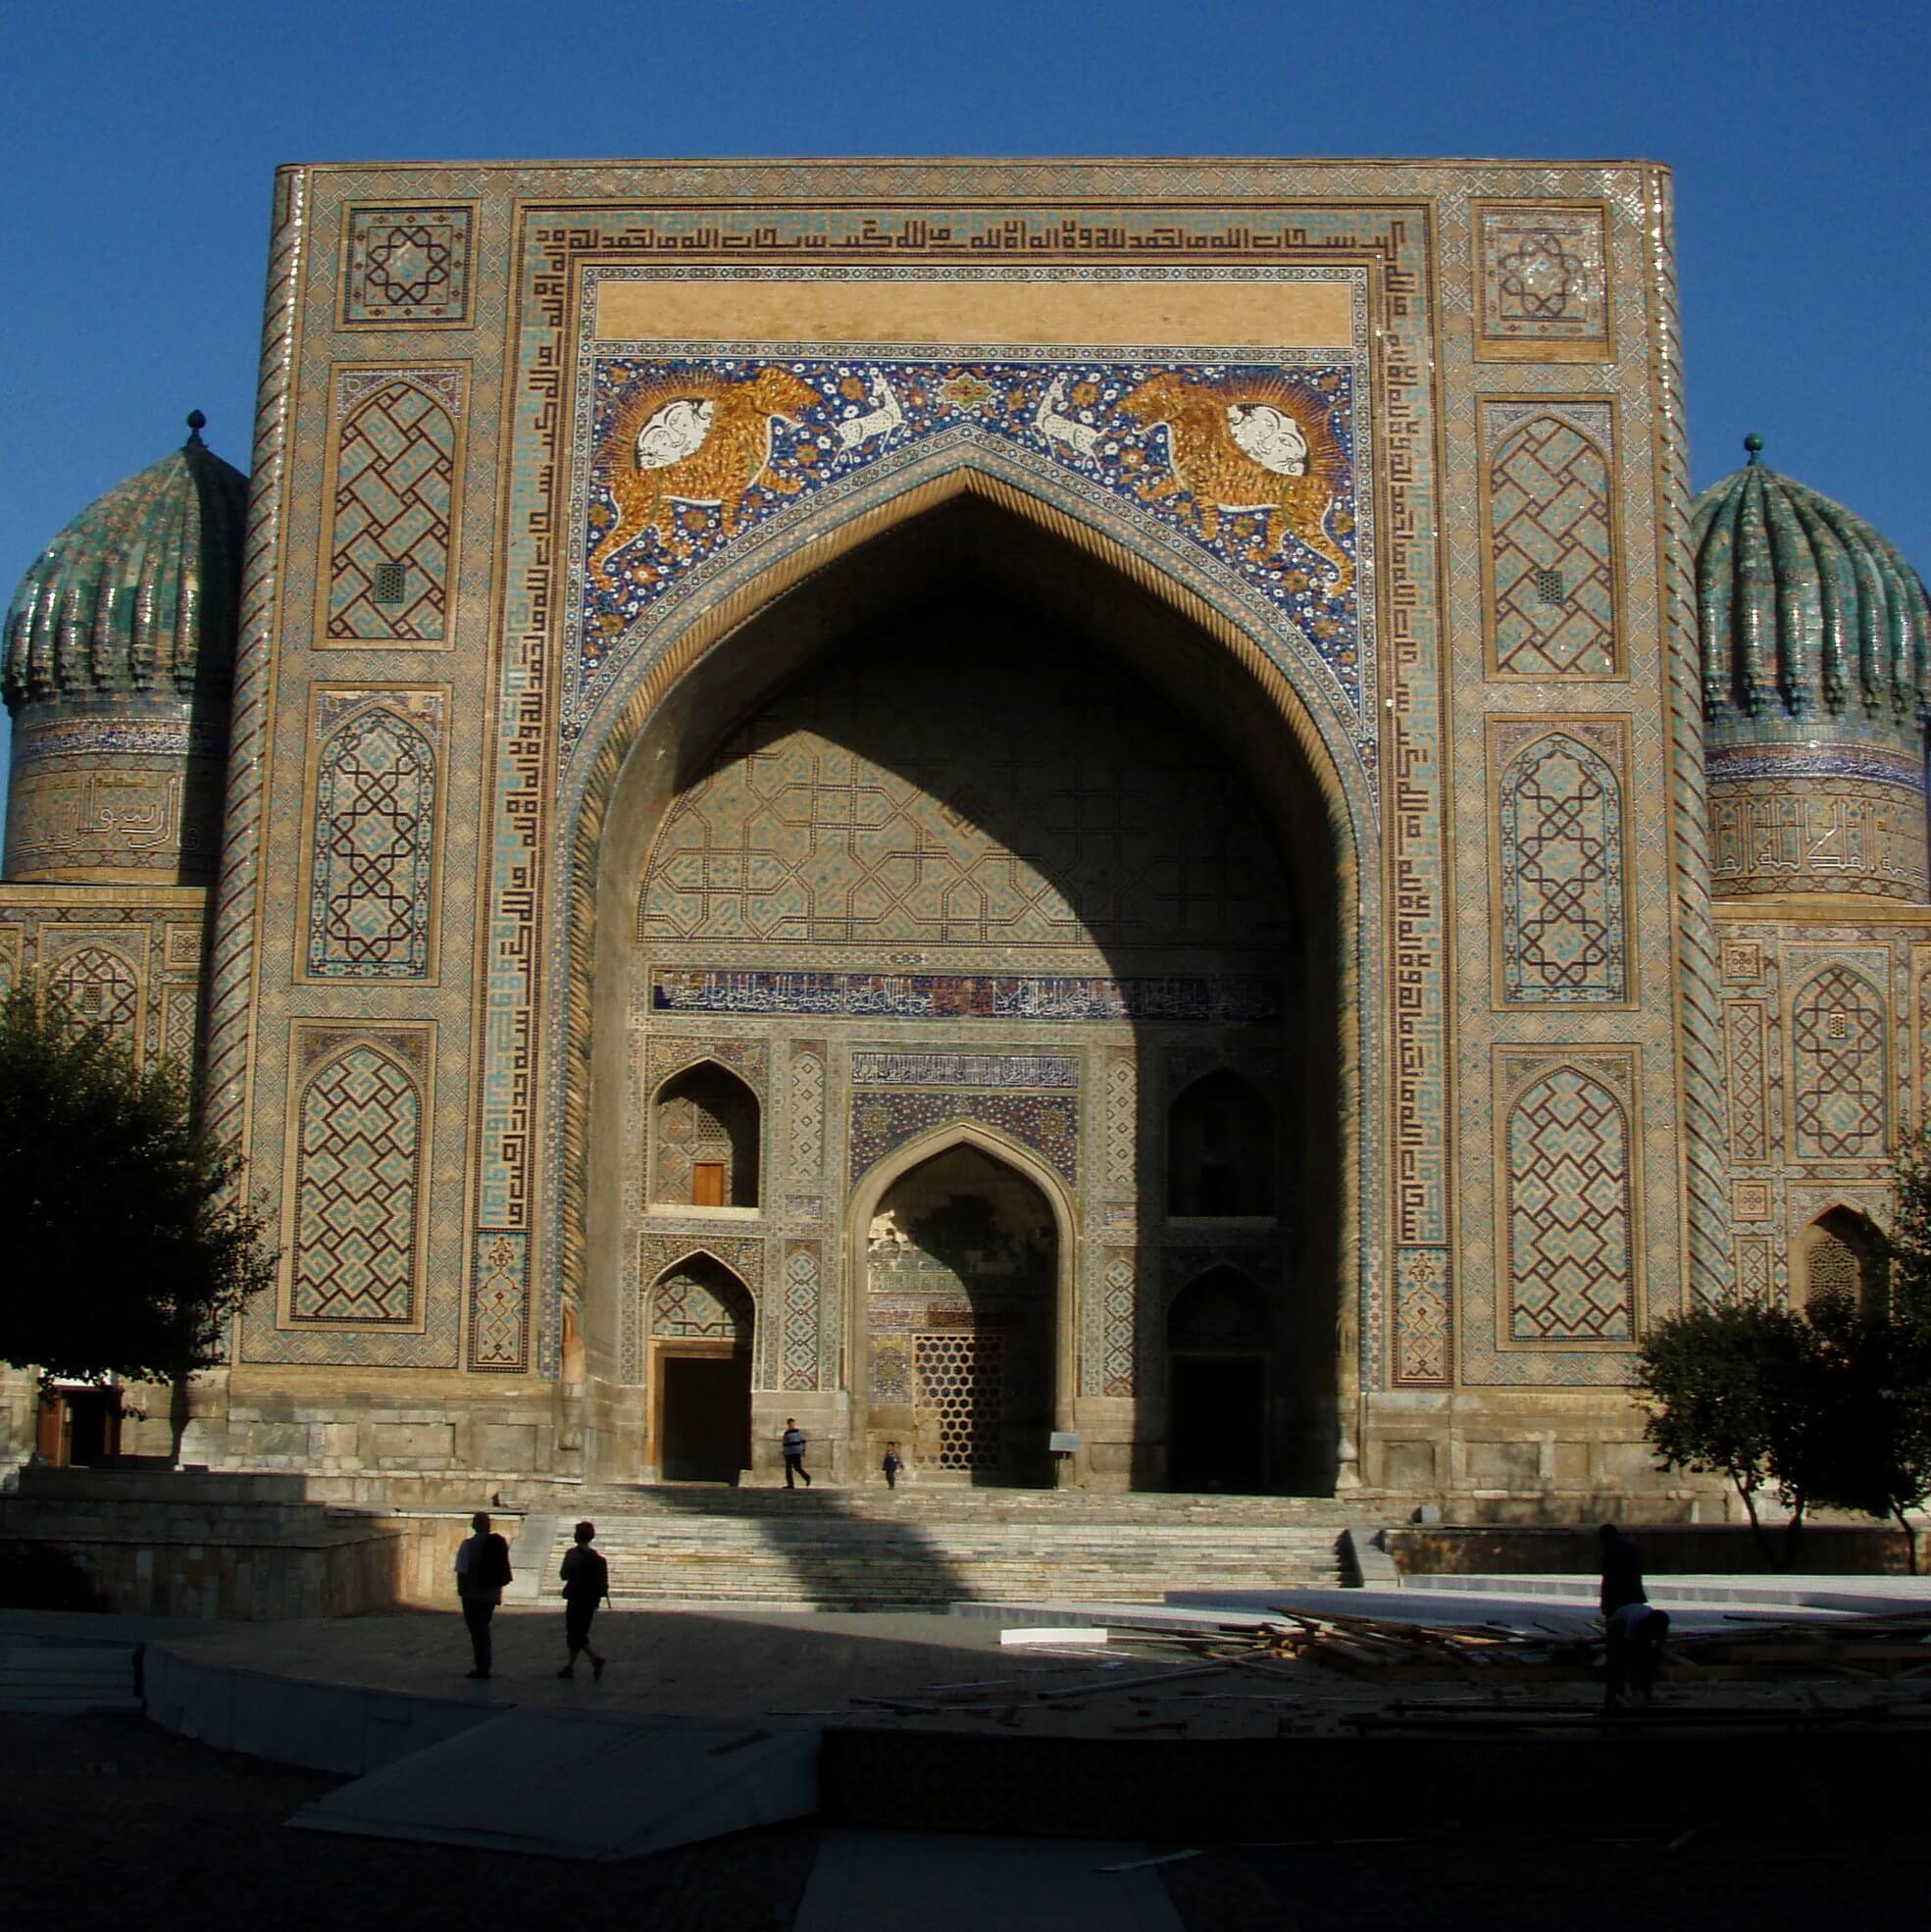 oezbekistan, entree koepel kerk.jpg